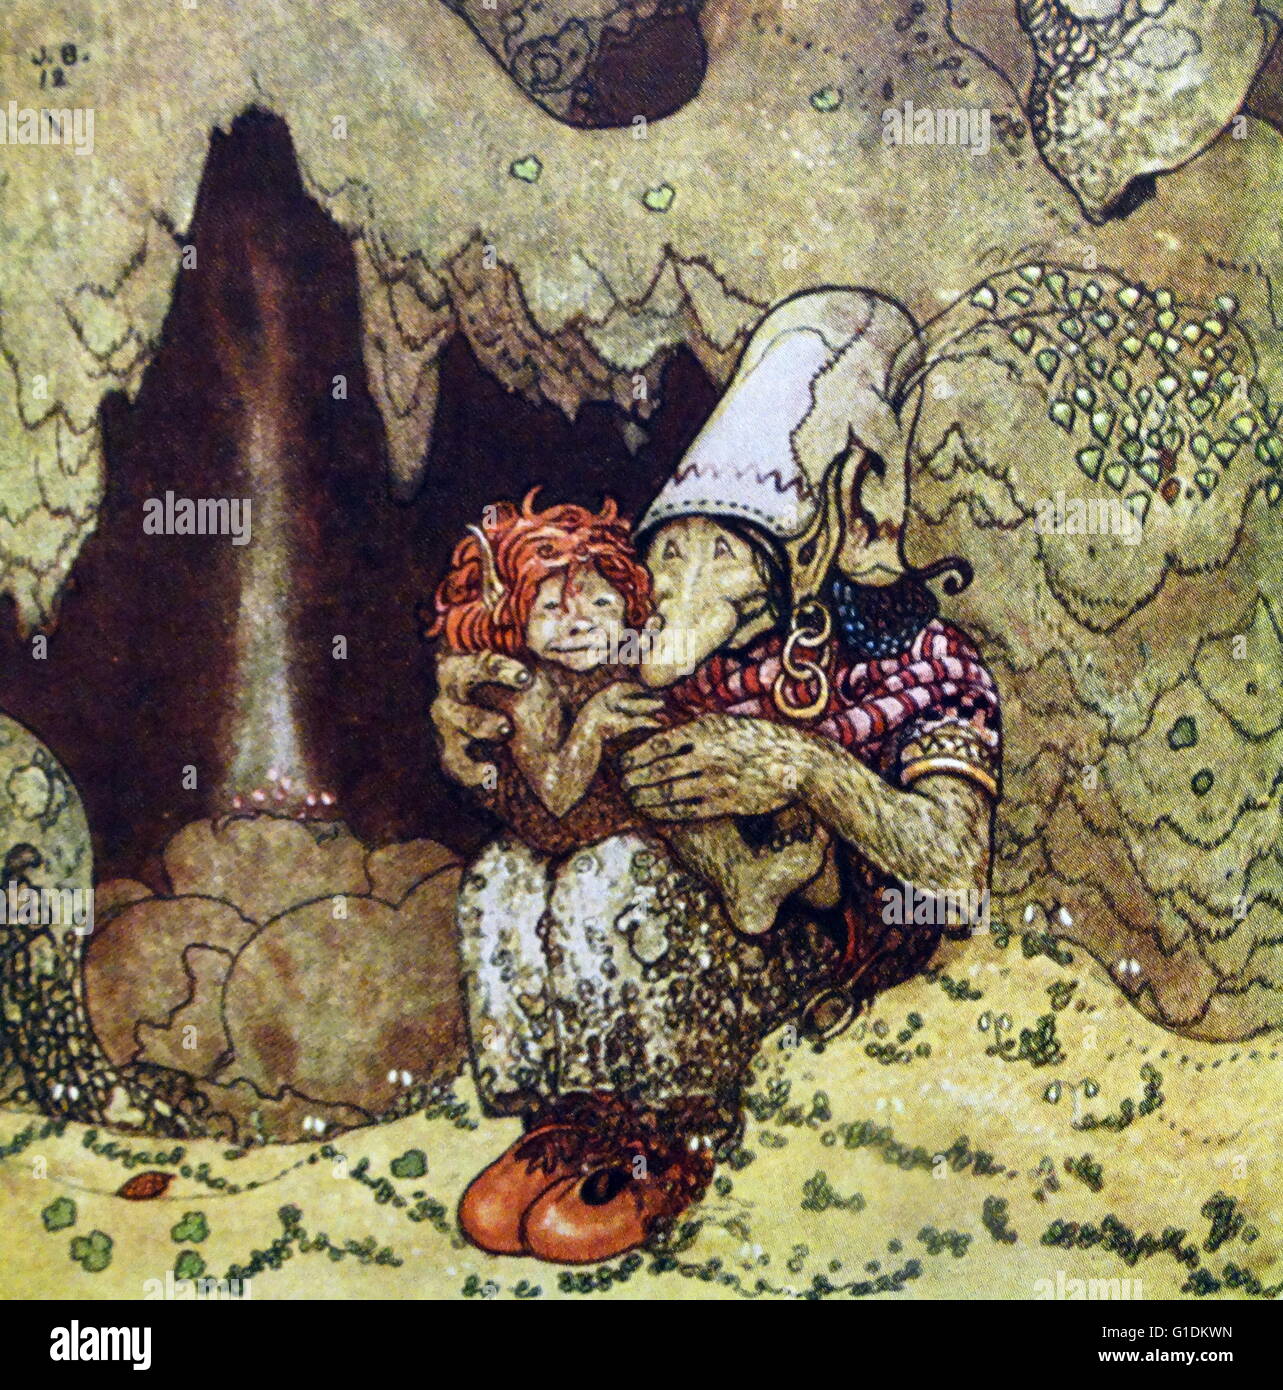 Illustration couleur de Humpe et sa mère de l'Agence suédoise de Folklore et de conte de fées livre 'entre les gnomes et les Trolls'. Par John Bauer (1882-1918) un peintre suédois et l'illustrateur. En date du 20e siècle Banque D'Images